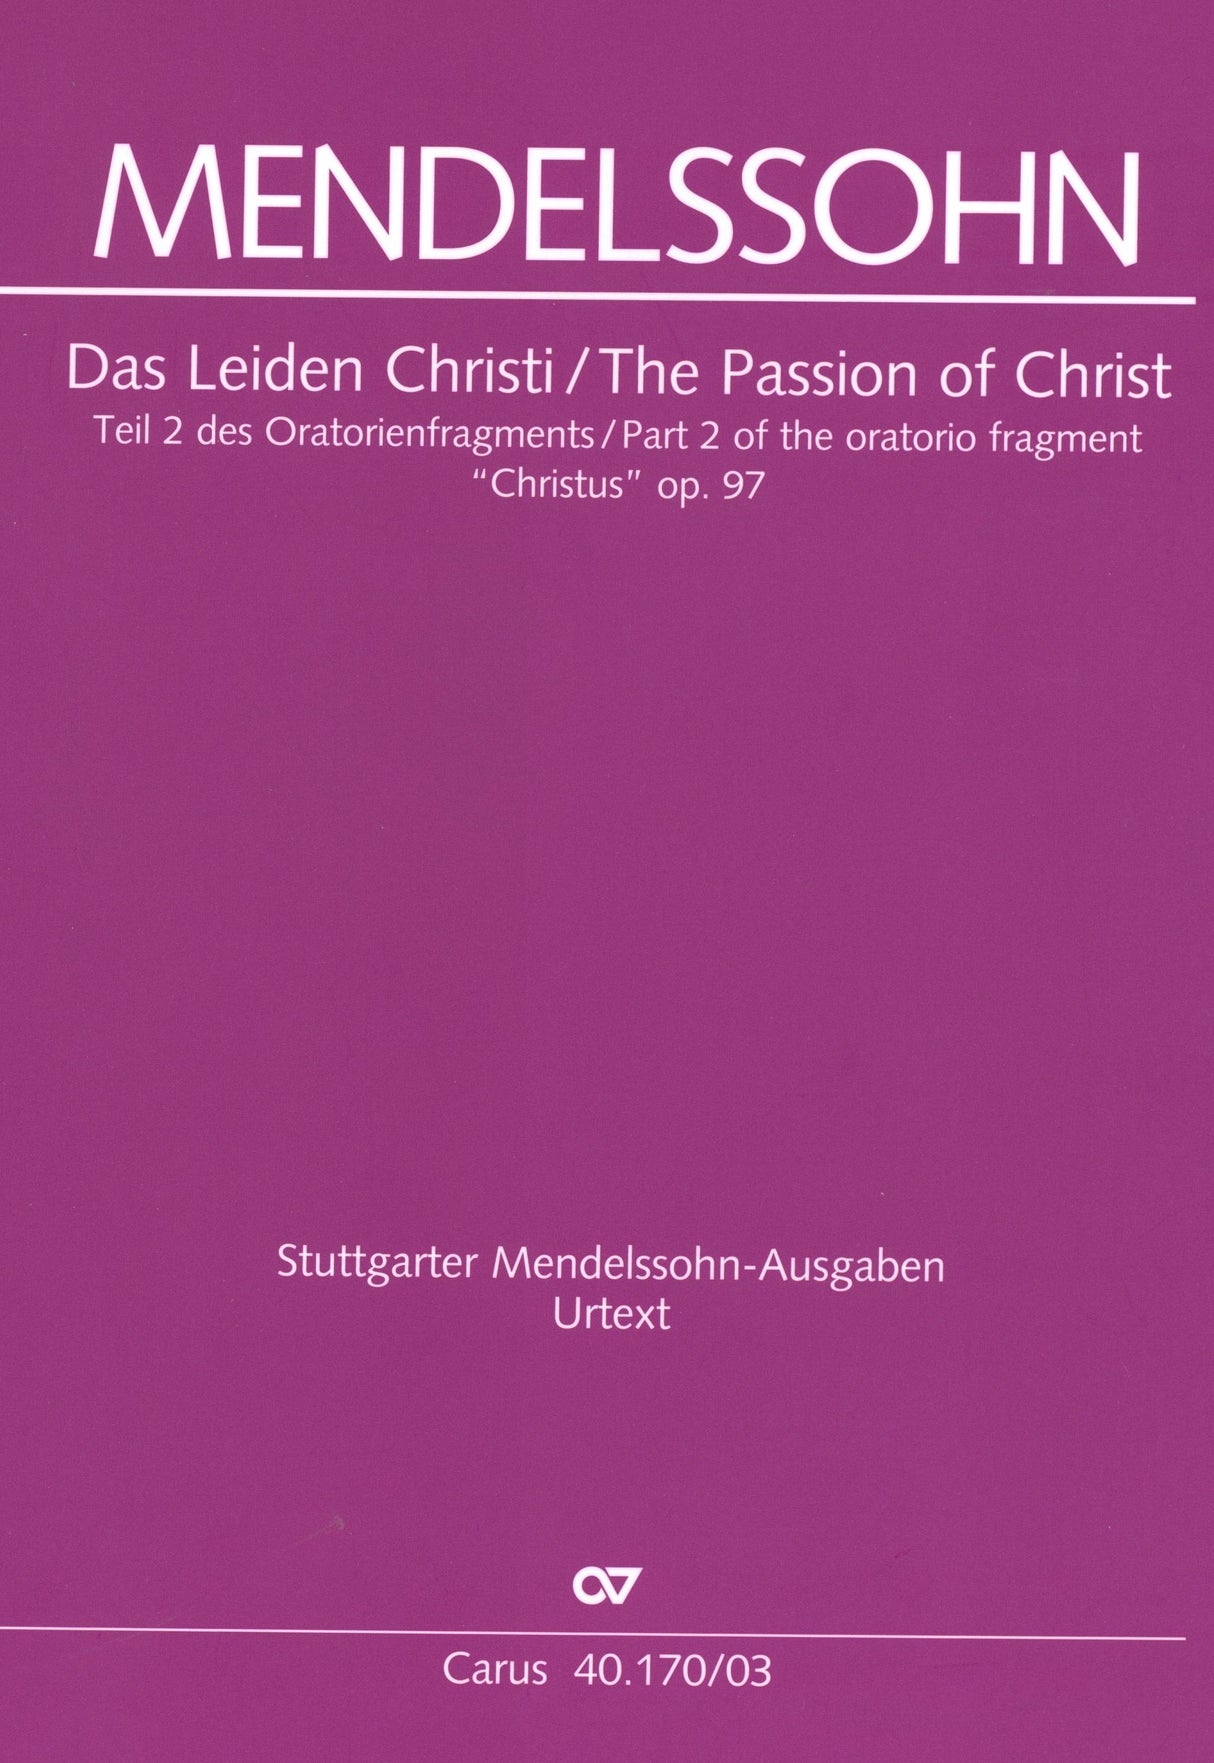 Mendelssohn: The Passion of Christ (Das Leiden Christi)